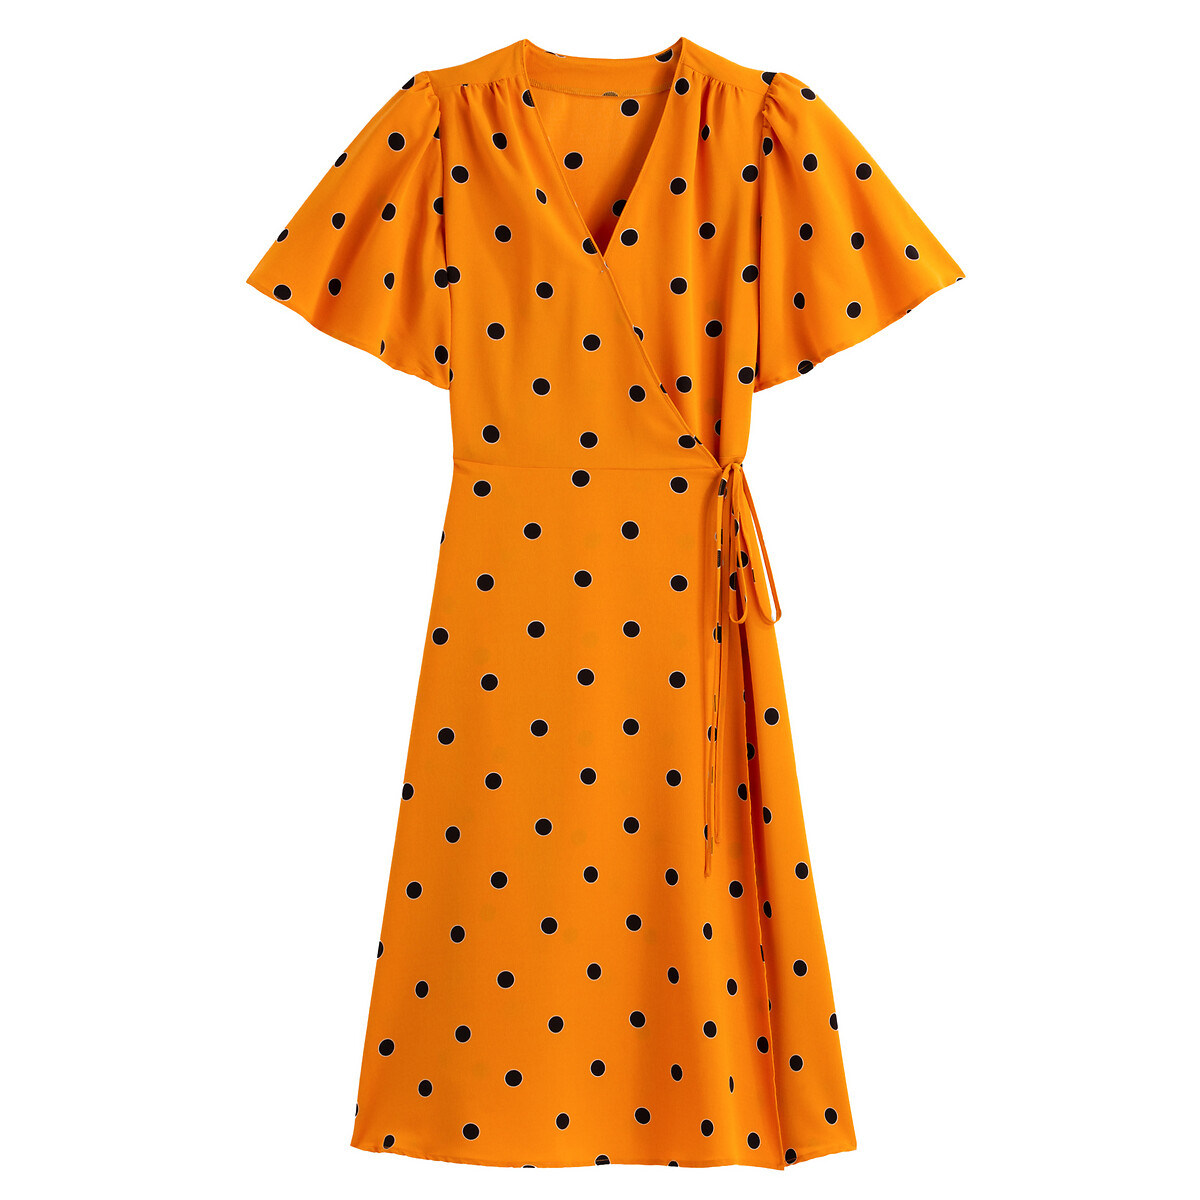 Платье LaRedoute С запахом принт в горошек 40 (FR) - 46 (RUS) желтый, размер 40 (FR) - 46 (RUS) С запахом принт в горошек 40 (FR) - 46 (RUS) желтый - фото 5